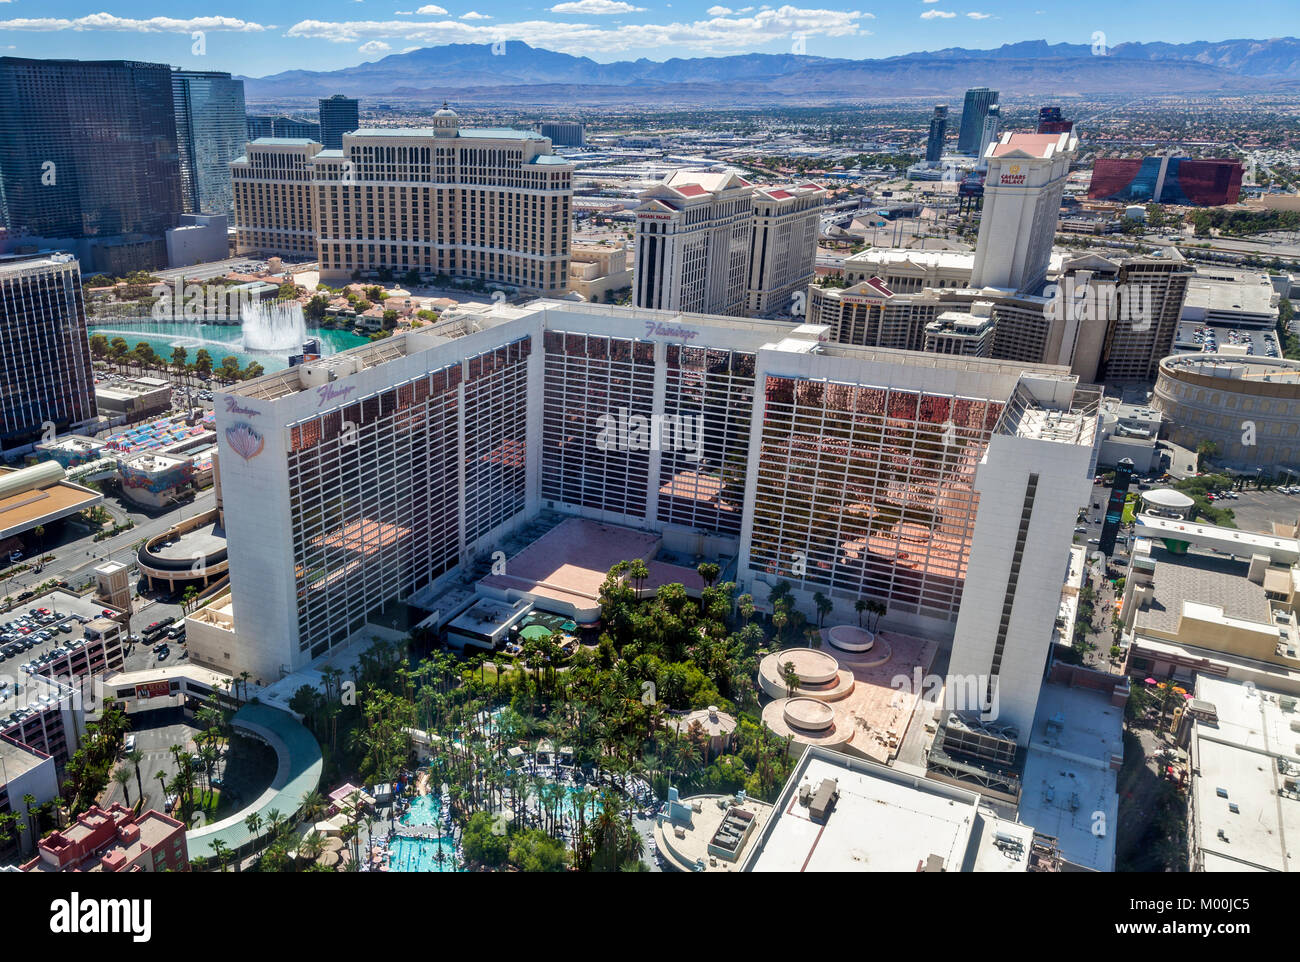 Un jour skyline vue de plusieurs casino and resort sur Las Vegas Blvd constituent la grande roue de rouleau à Las Vegas, Nevada. Banque D'Images